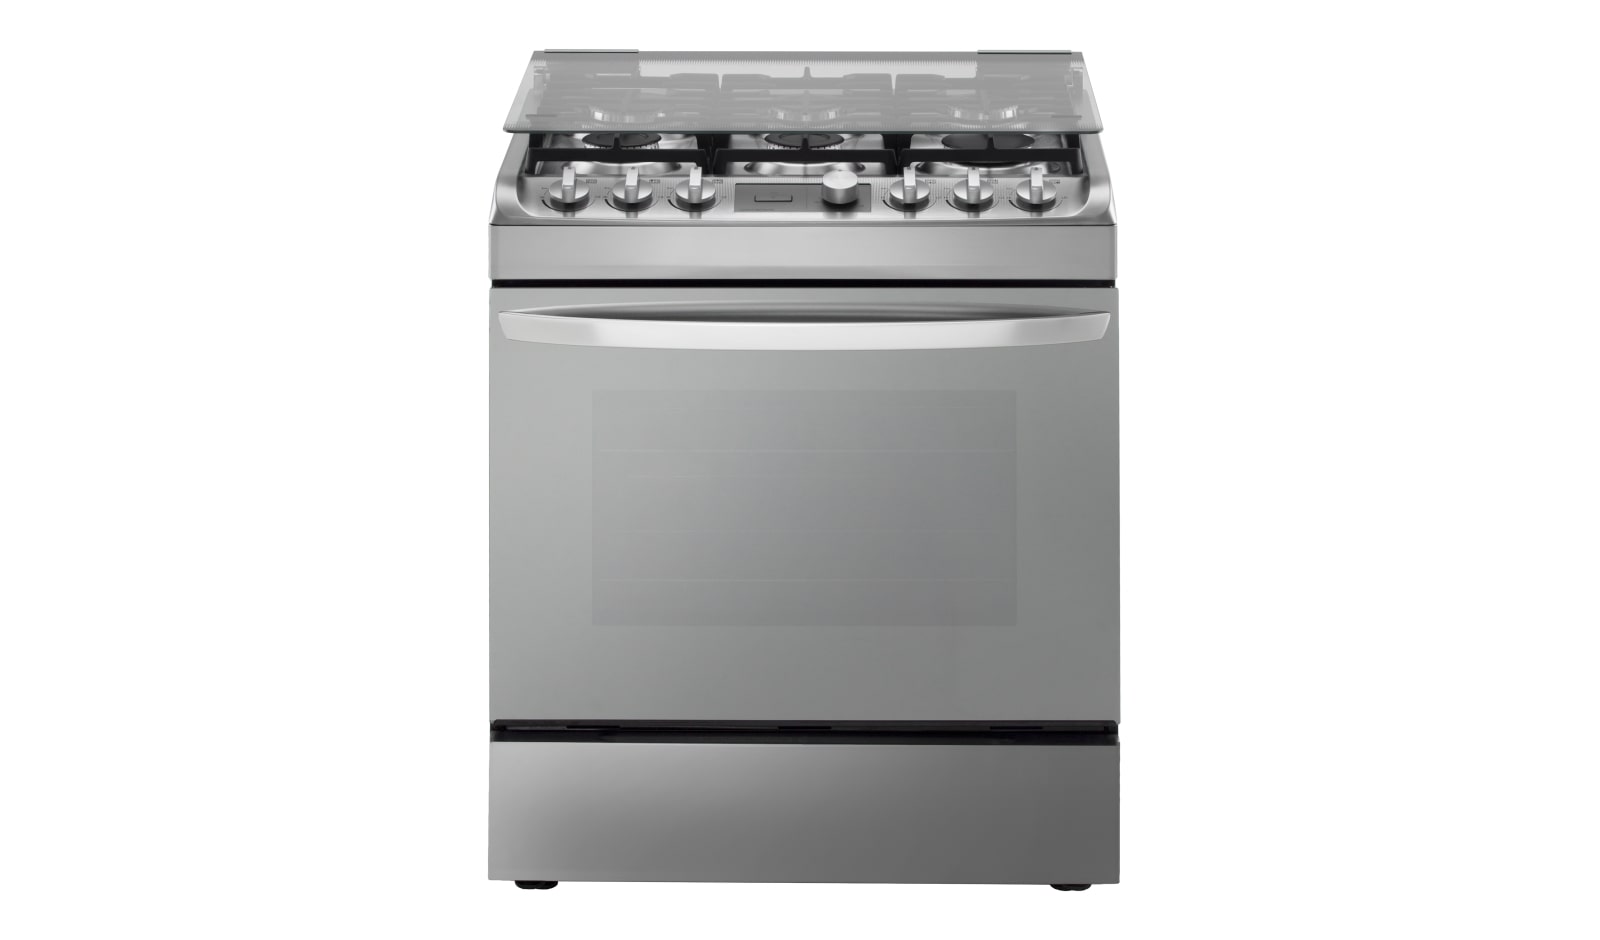 LG Cocina con tecnología EasyClean, 6 hornillas y Gran Capacidad en el horno, RSG314M